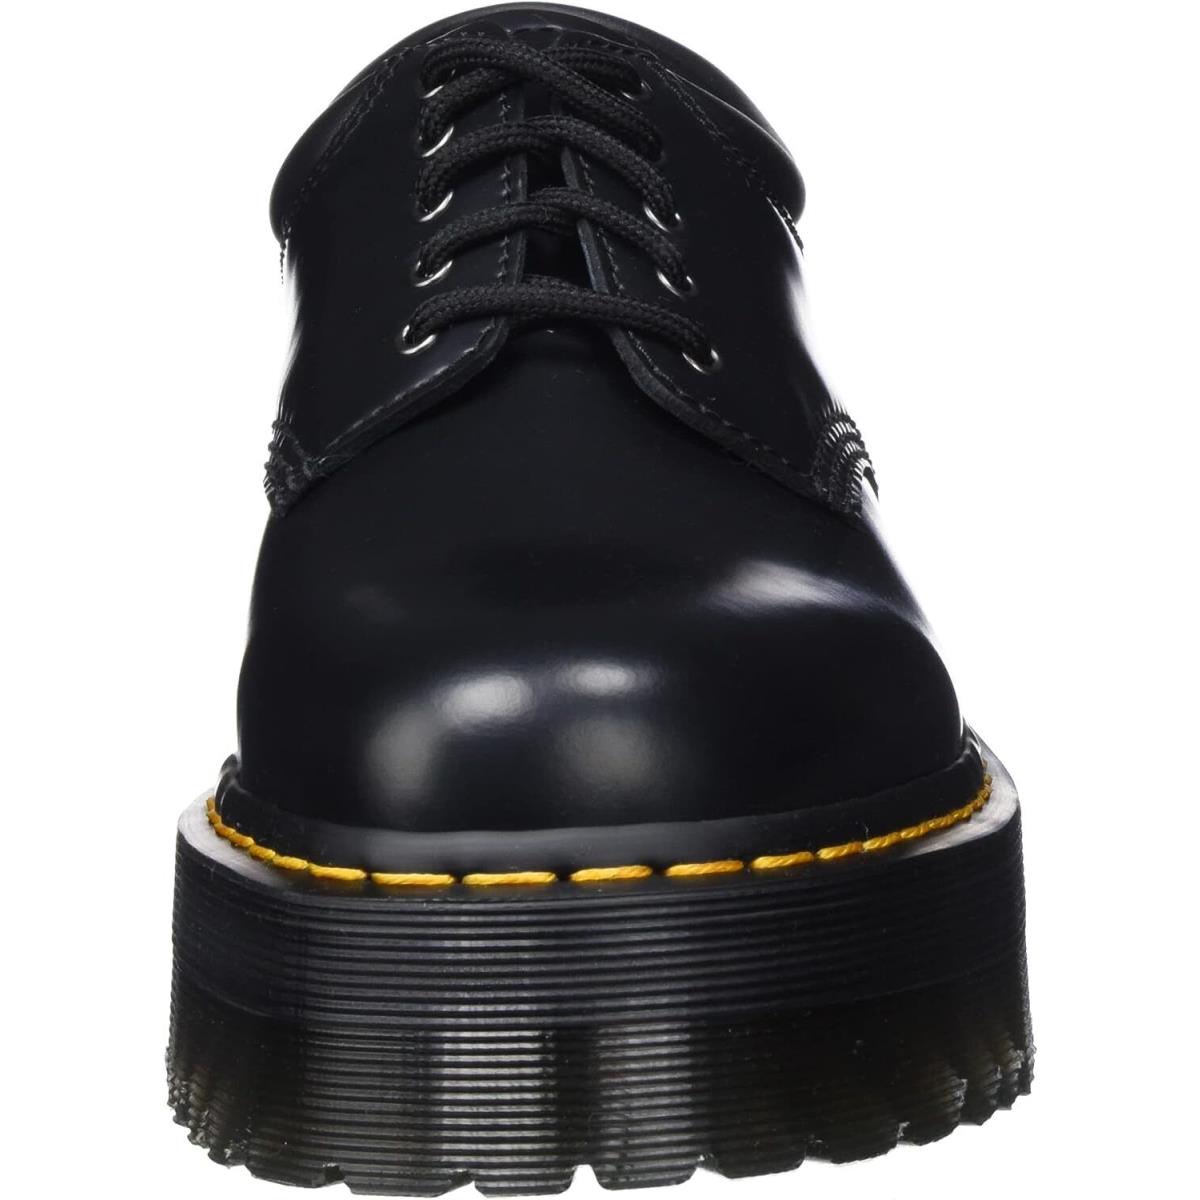 Dr. Martens 8053 Quad Shoes Black Polished - Black Polished